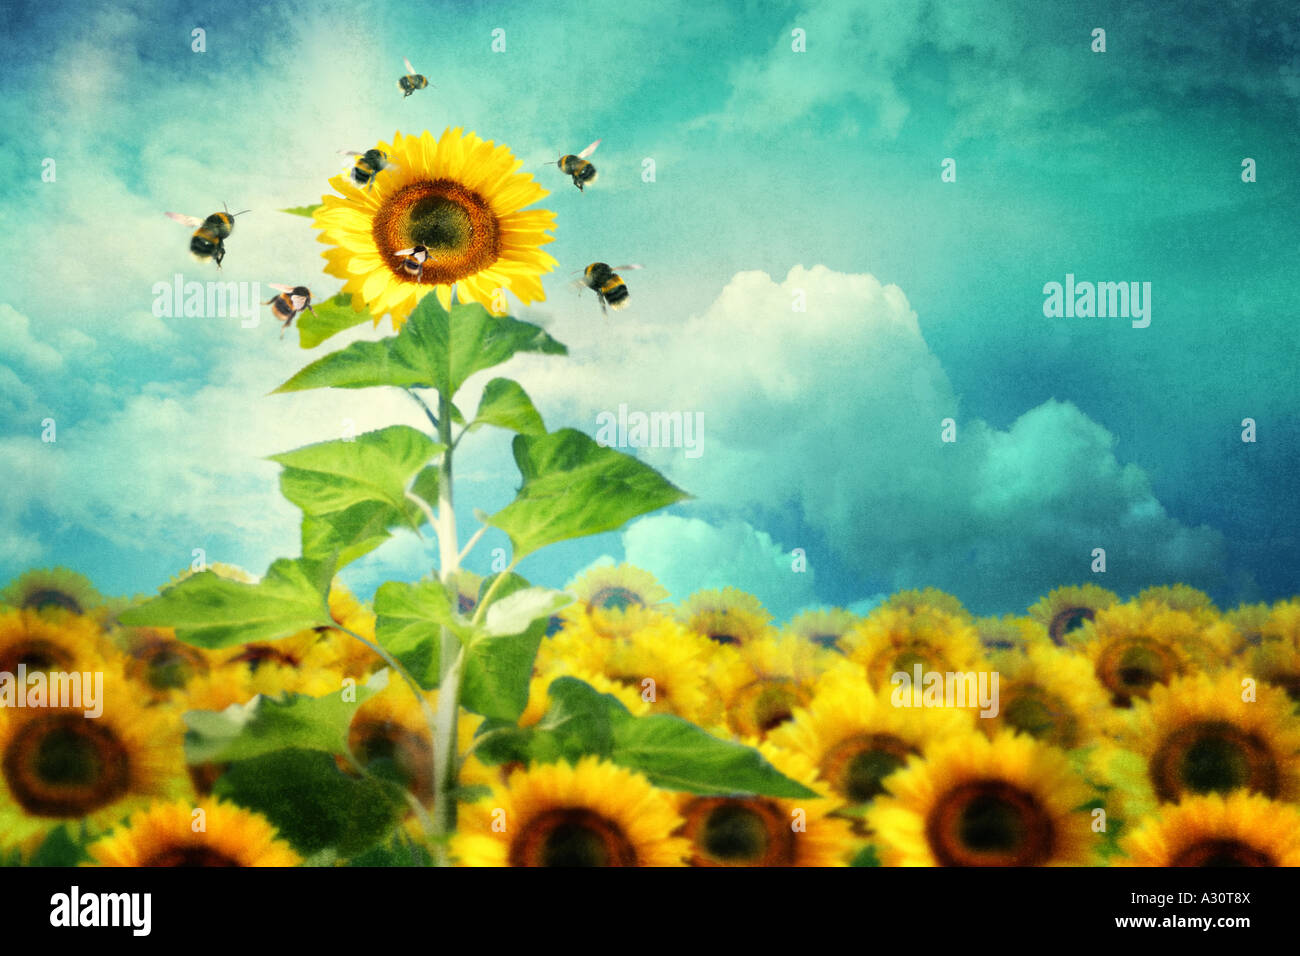 Konzept-Bild einer hohen Sonnenblume hervorstechen und zieht mehr Bienen Stockfoto